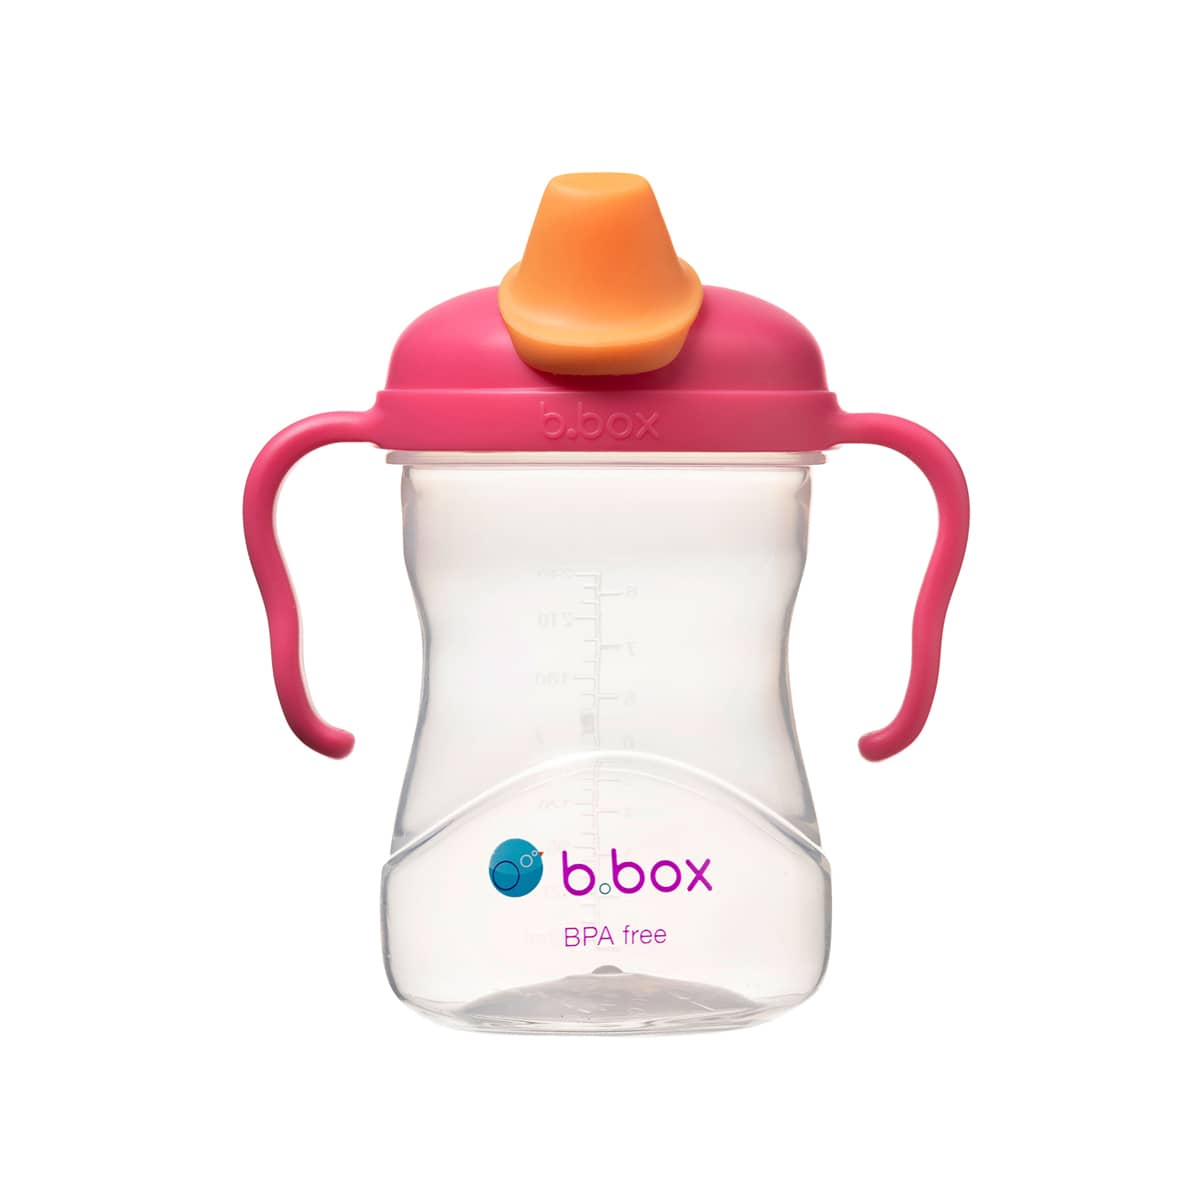 b.box Spout Cup - Raspberry